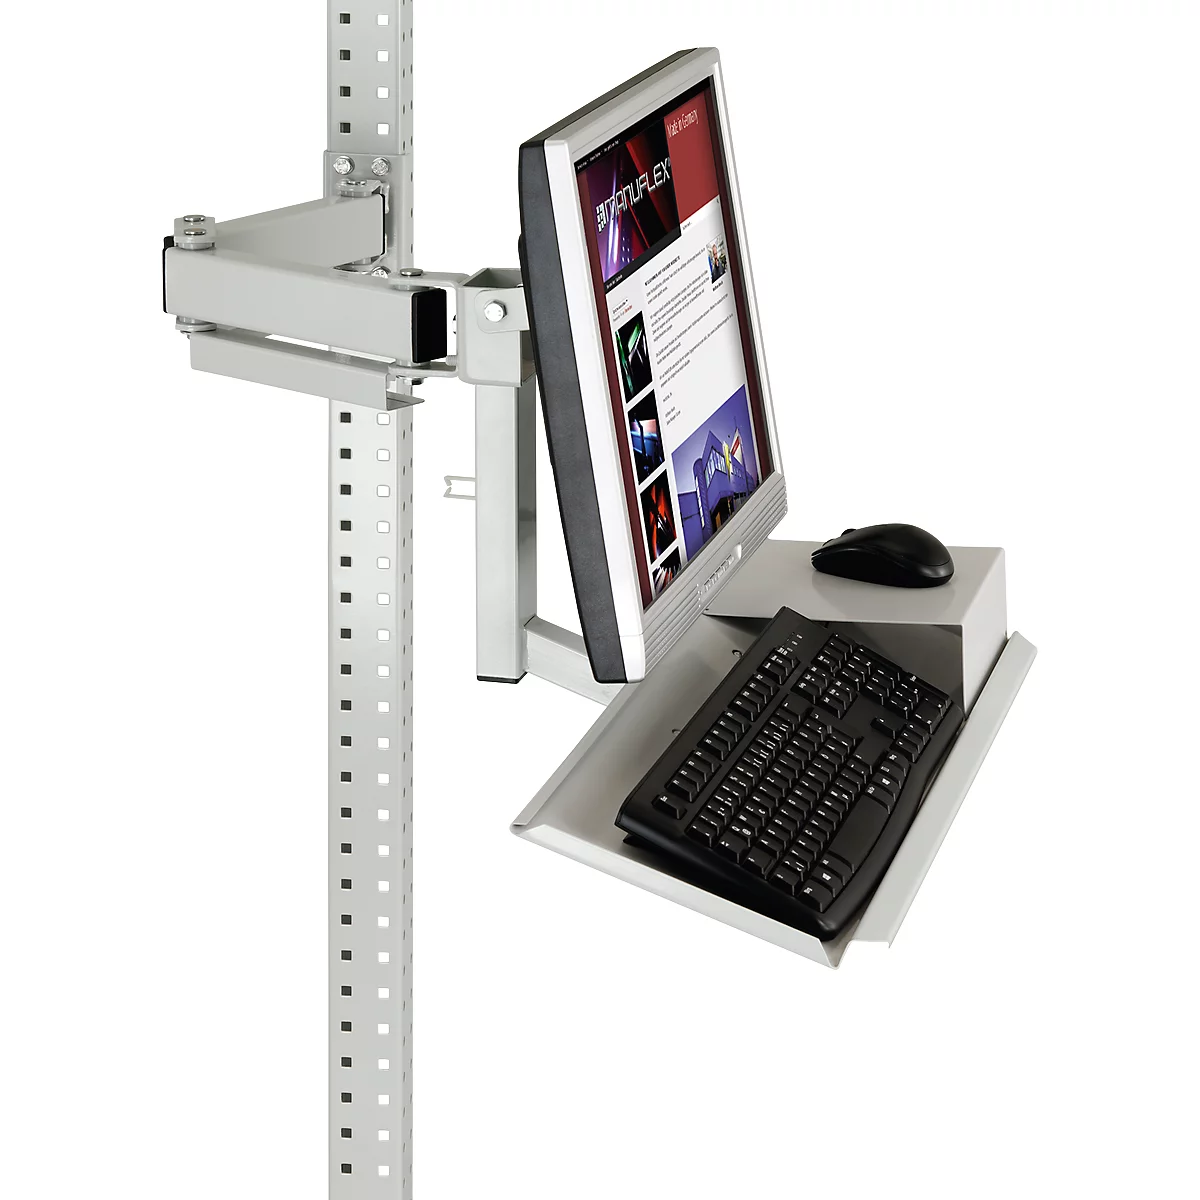 Soporte para monitor Packpool, superficie para teclado y ratón, monitores de 15–24', VESA 75 mm